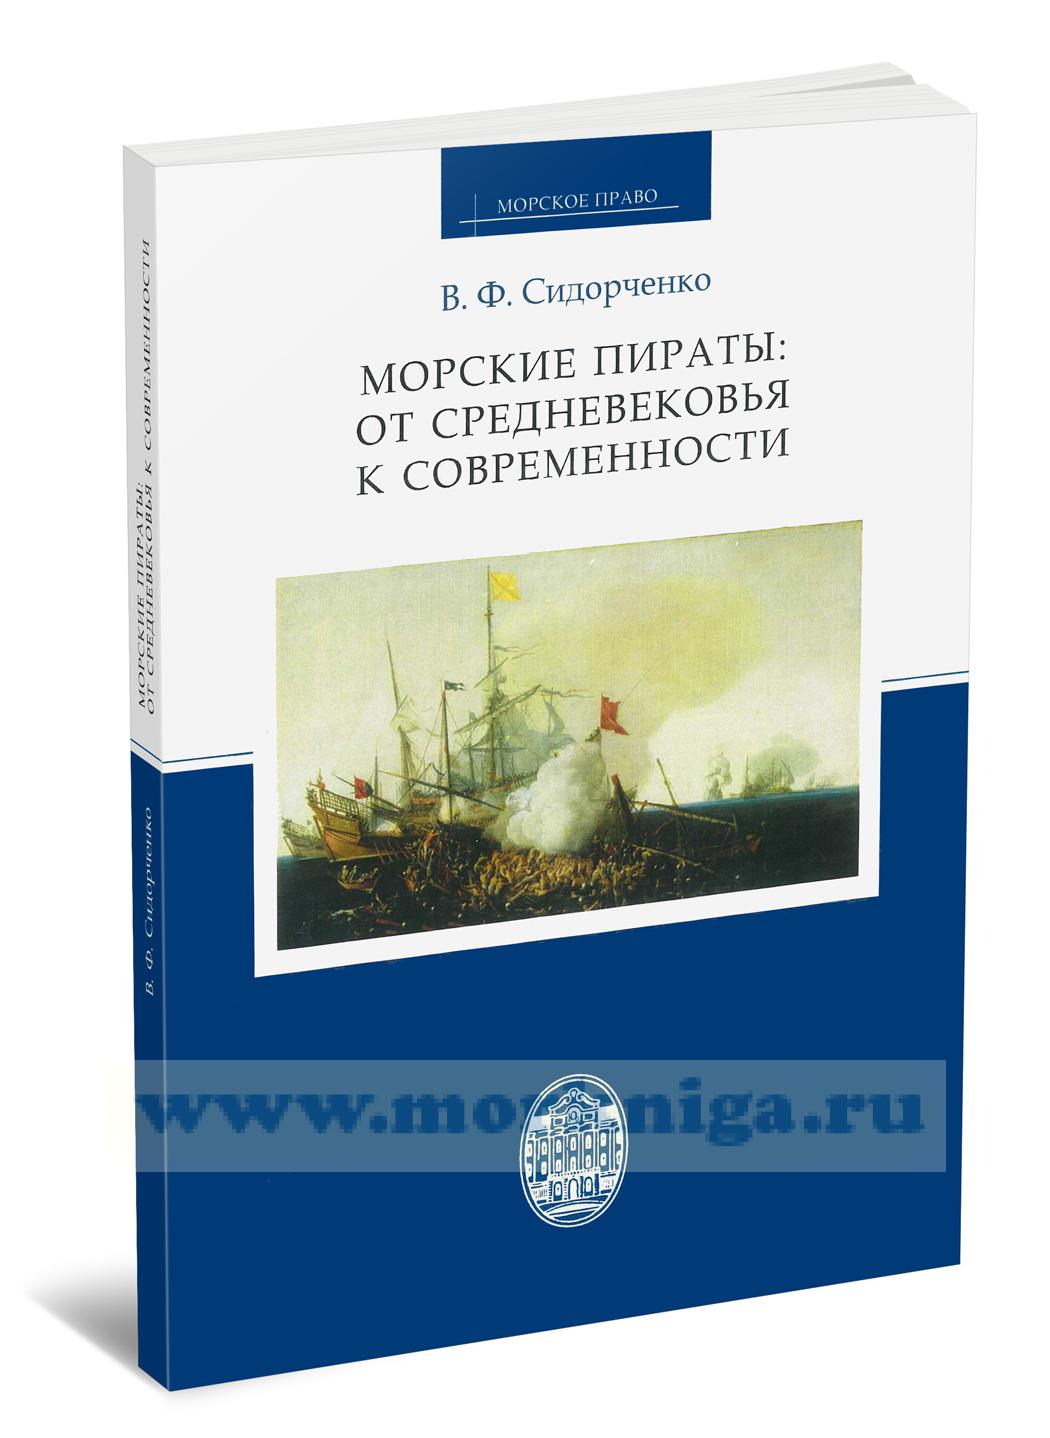 Морские пираты: от Средневековья к современности